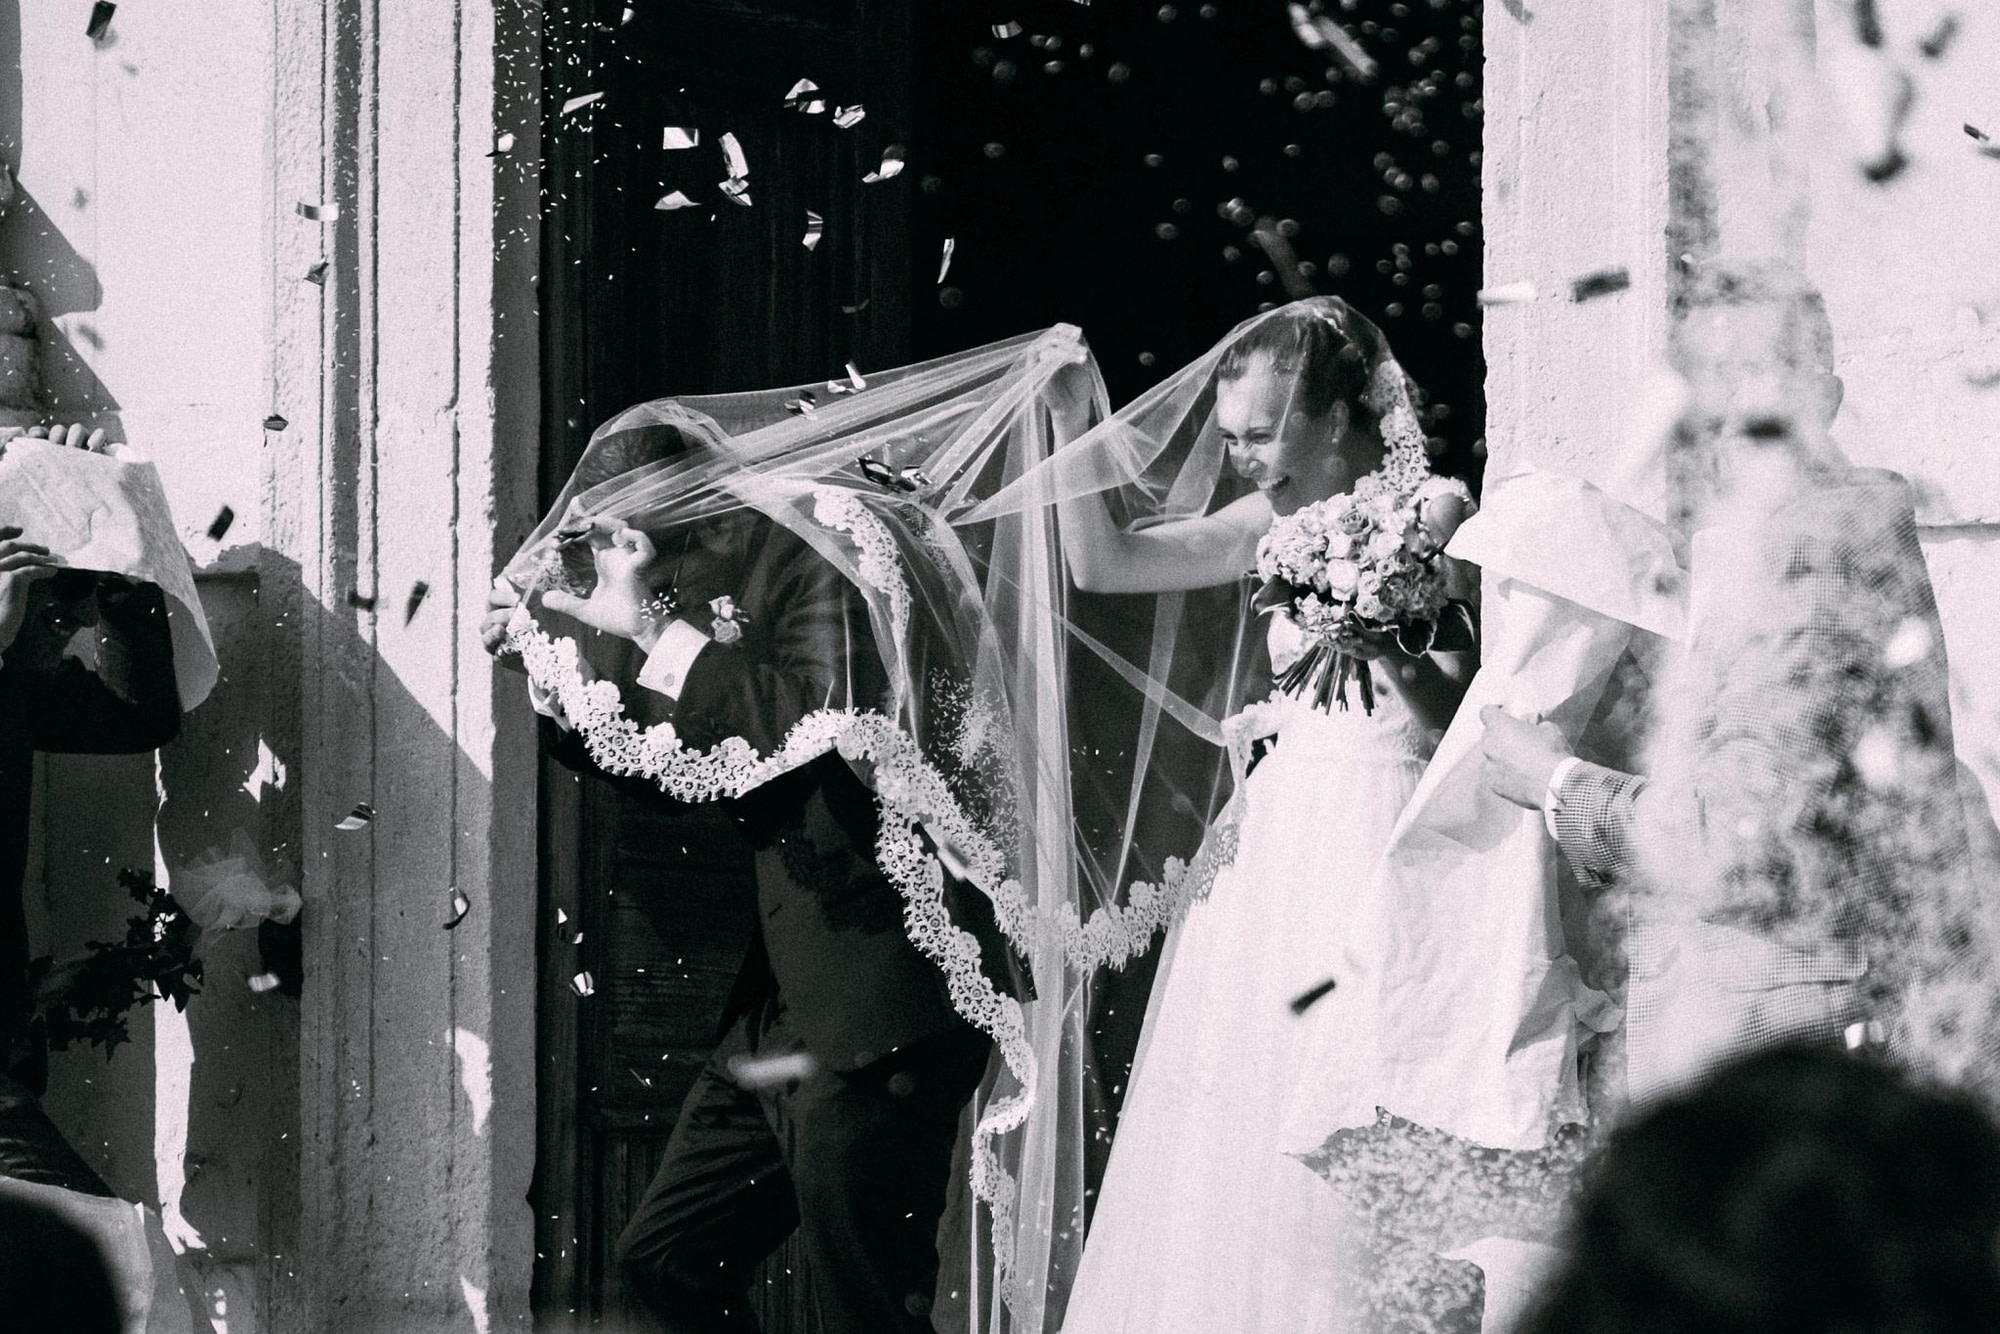 gli sposi all'uscita dalla chiesa durante il lancio del riso si coprono con il velo del vestito